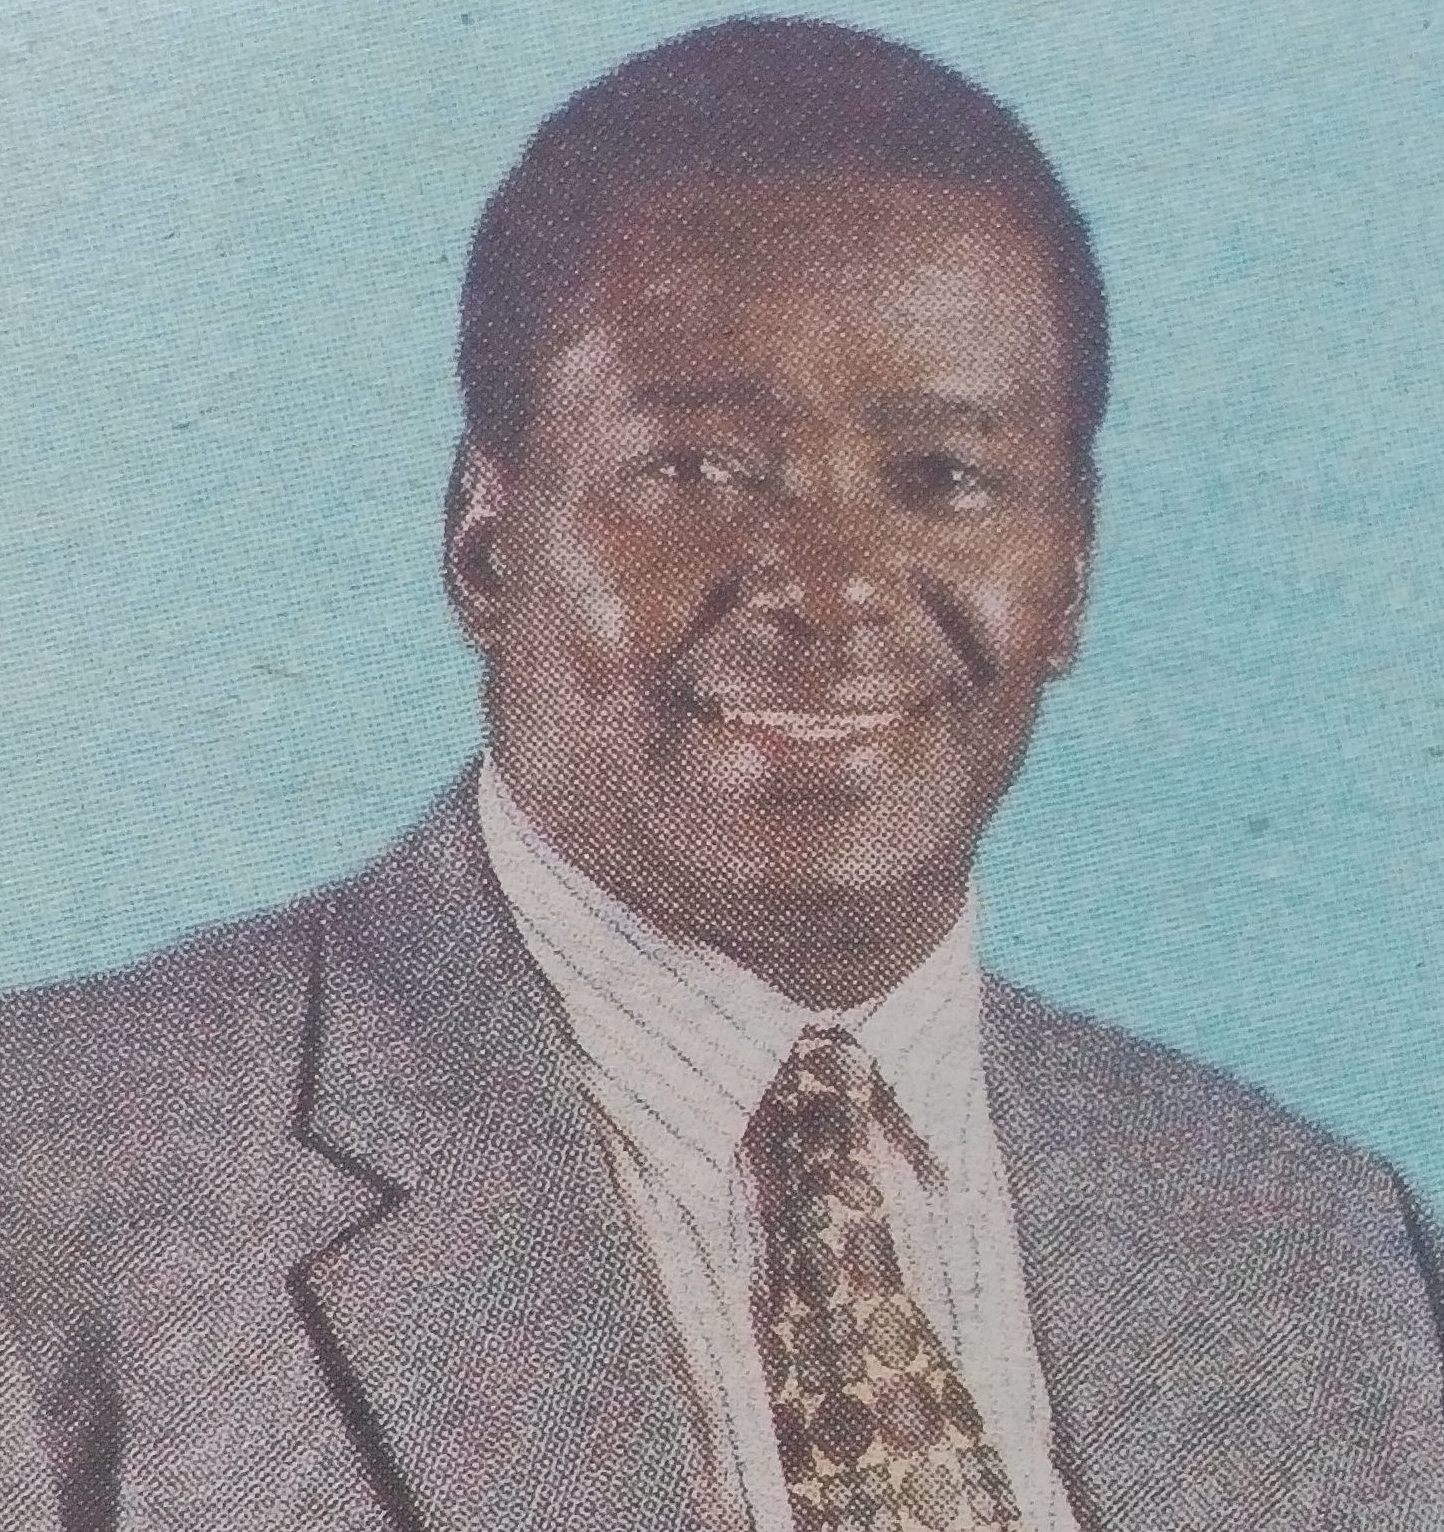 Obituary Image of Michael Murungu Macharia